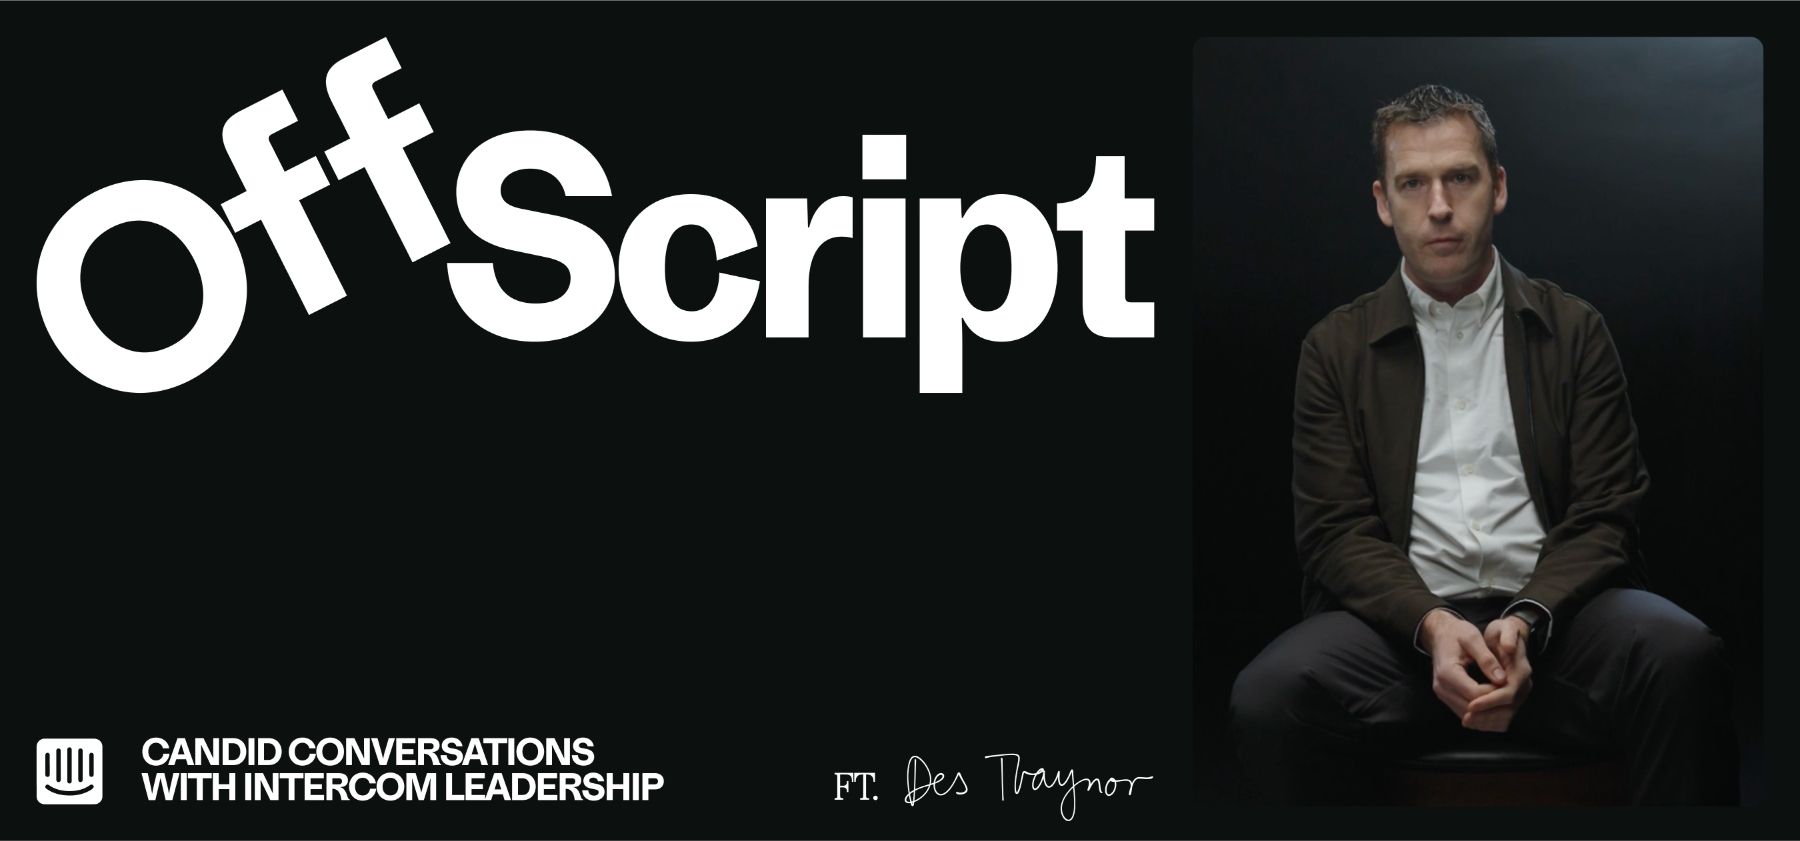 Presentamos “Off Script”, una nueva serie de Intercom